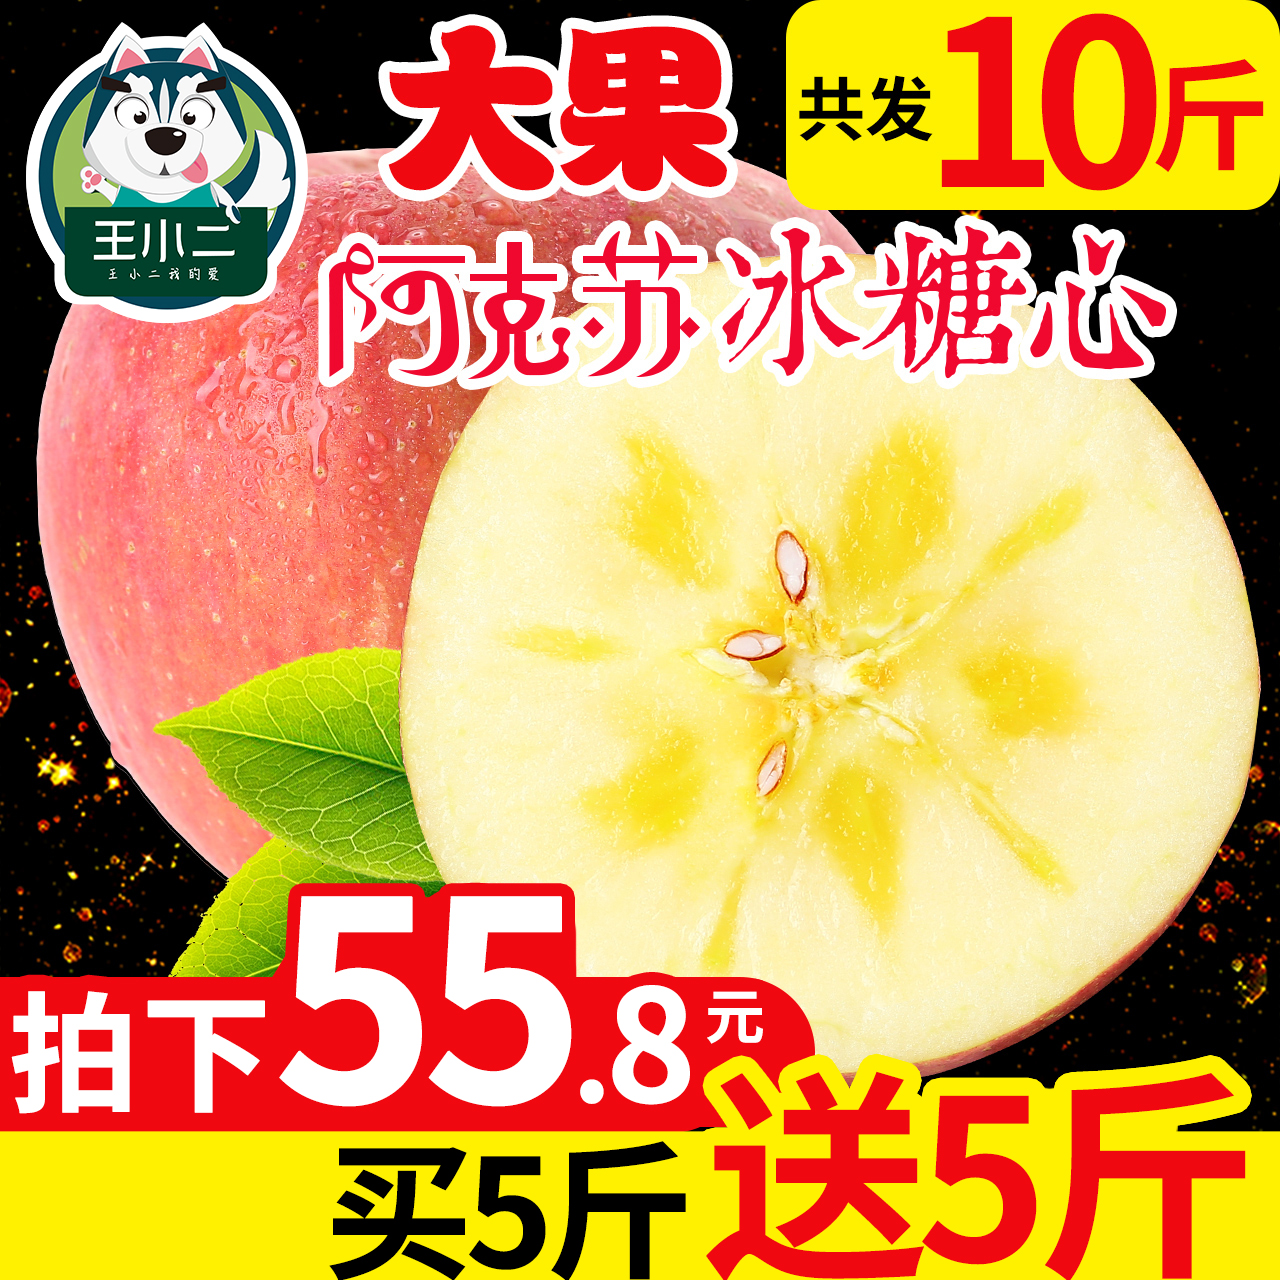 【买一送一】新疆阿克苏冰糖心苹果10斤水果整箱新鲜包邮丑苹果萍